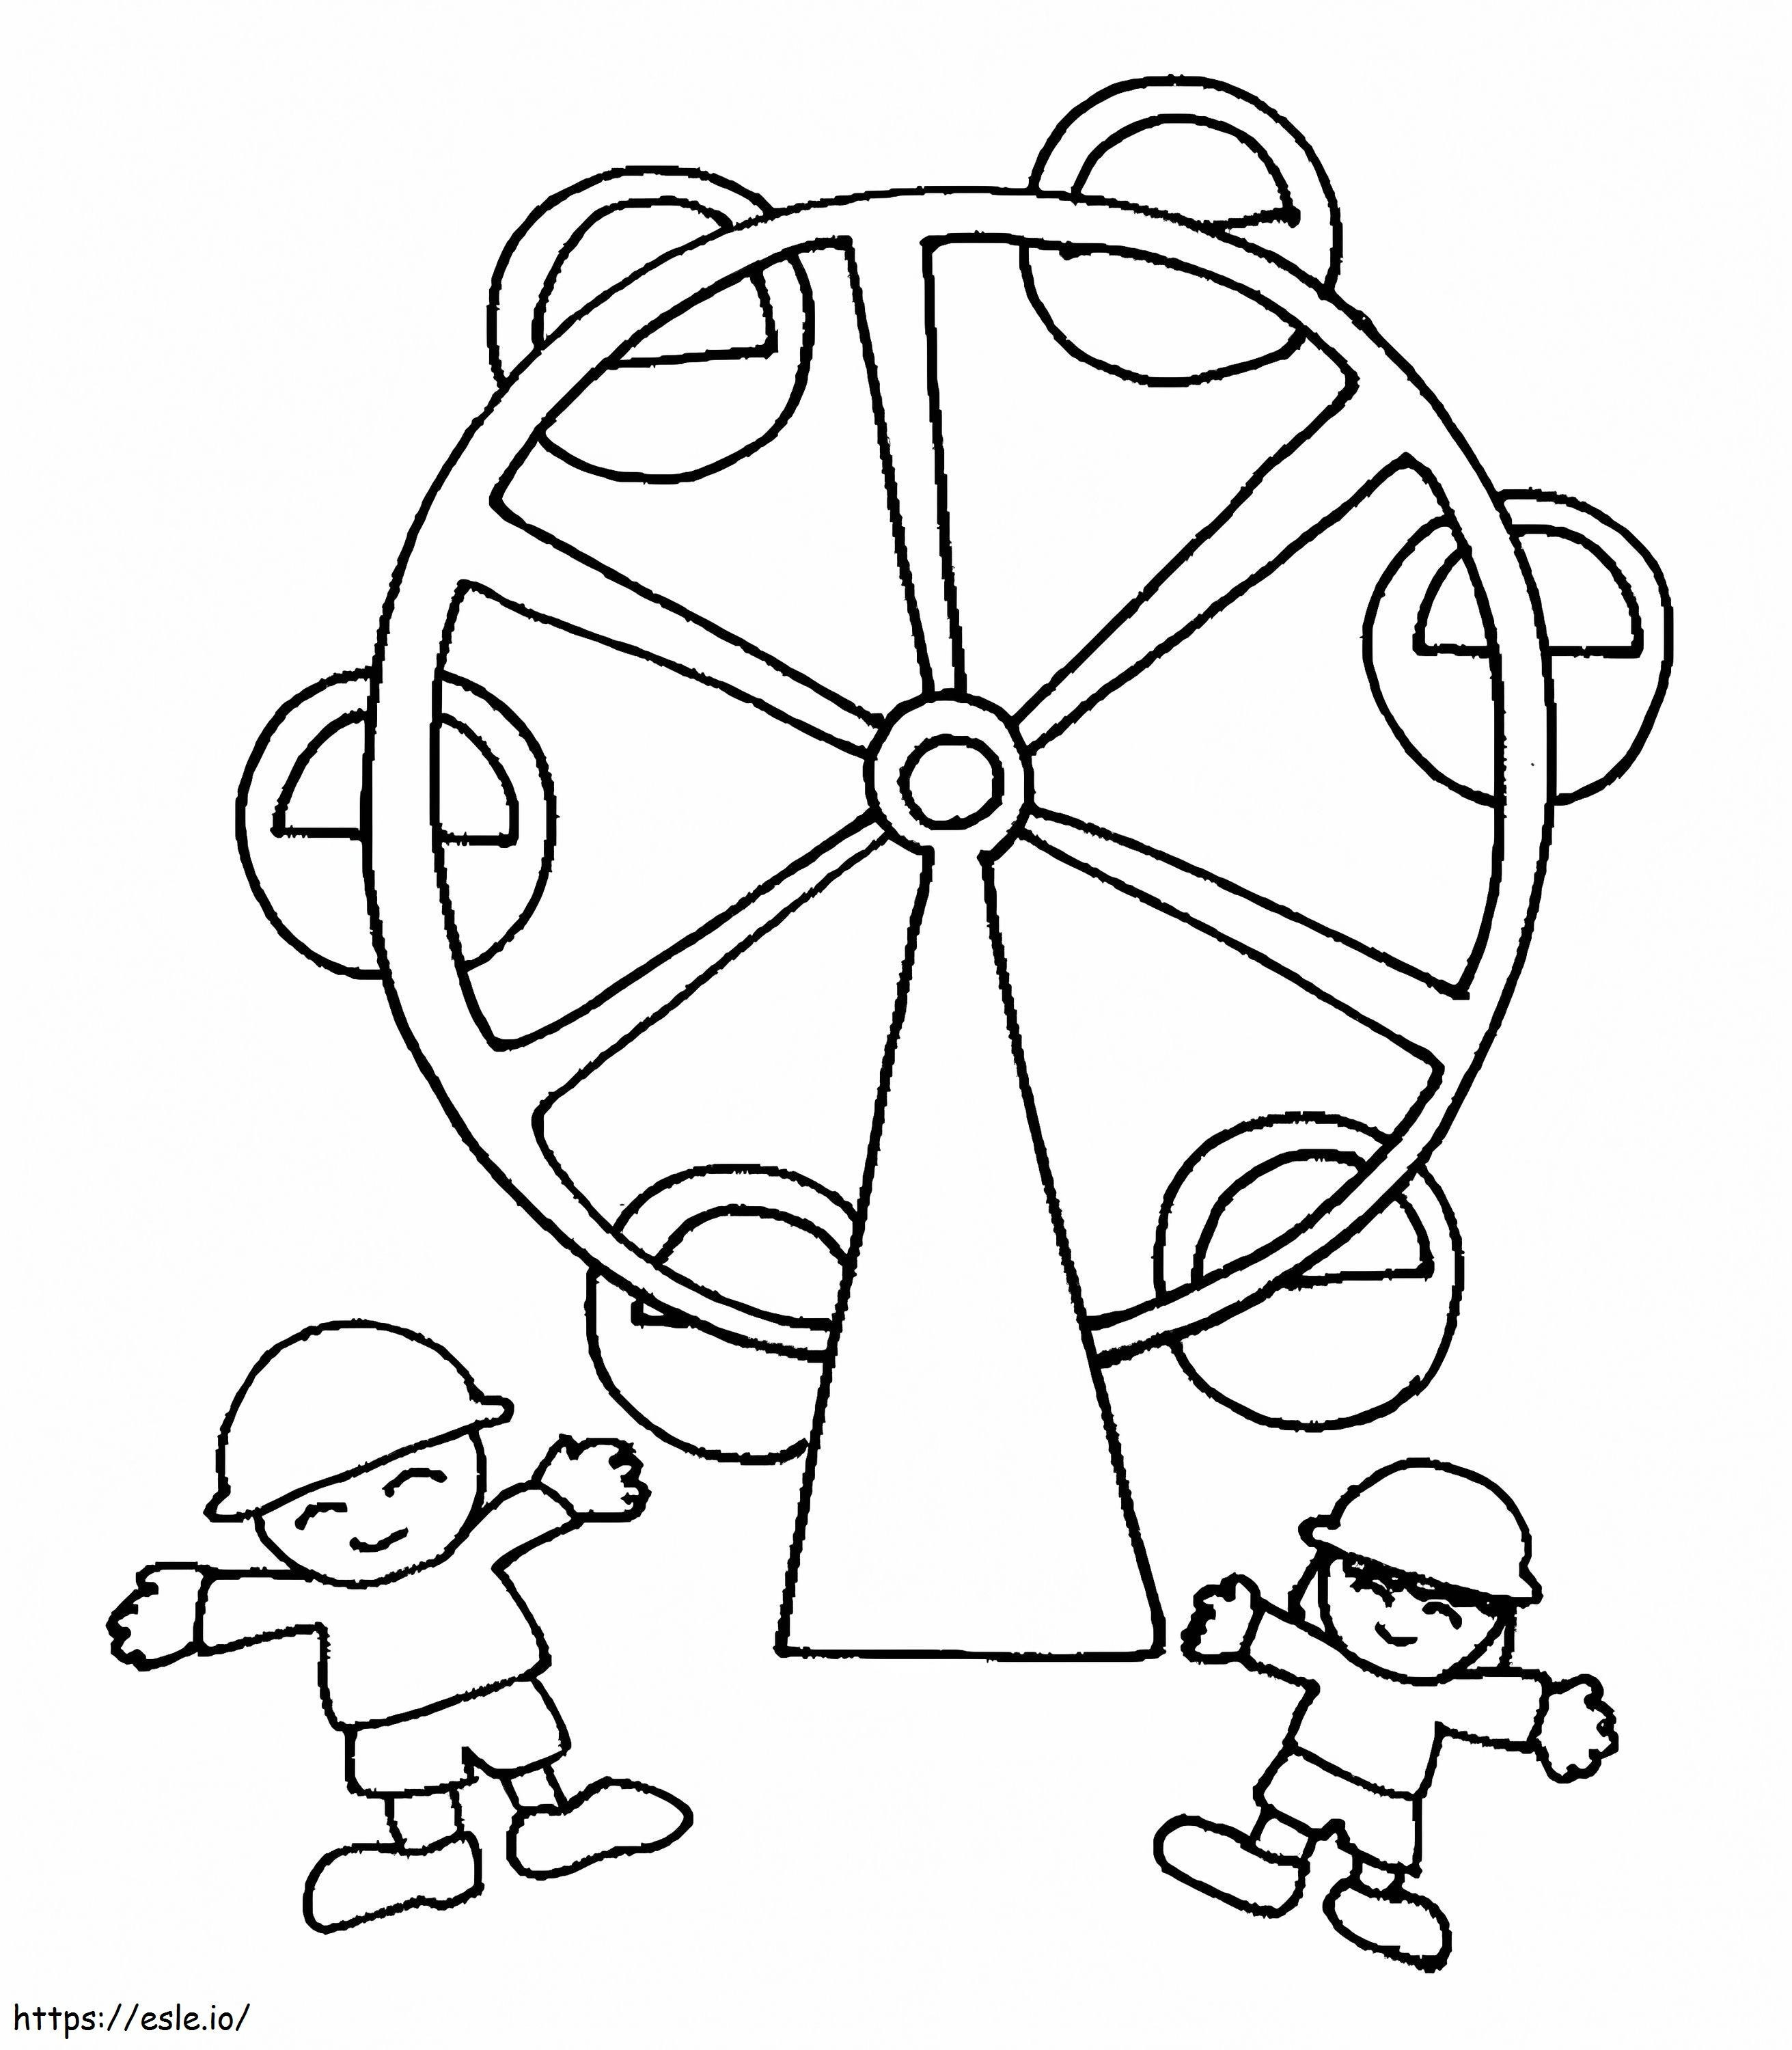 Kinder am Riesenrad ausmalbilder